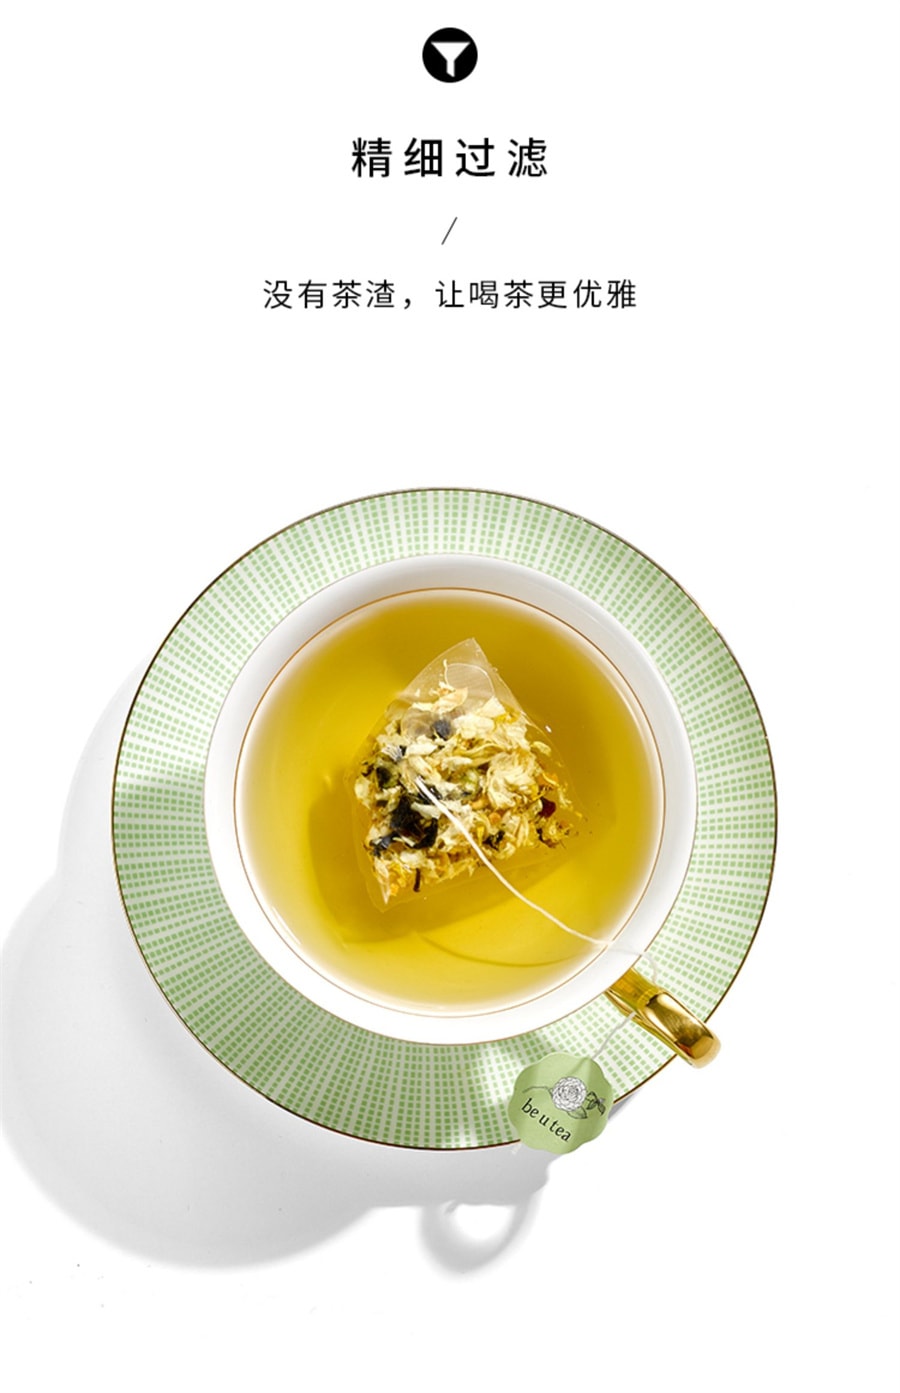 【中国直邮】新款Be u tea 菊花枸杞决明子 护肝养生茶 90g